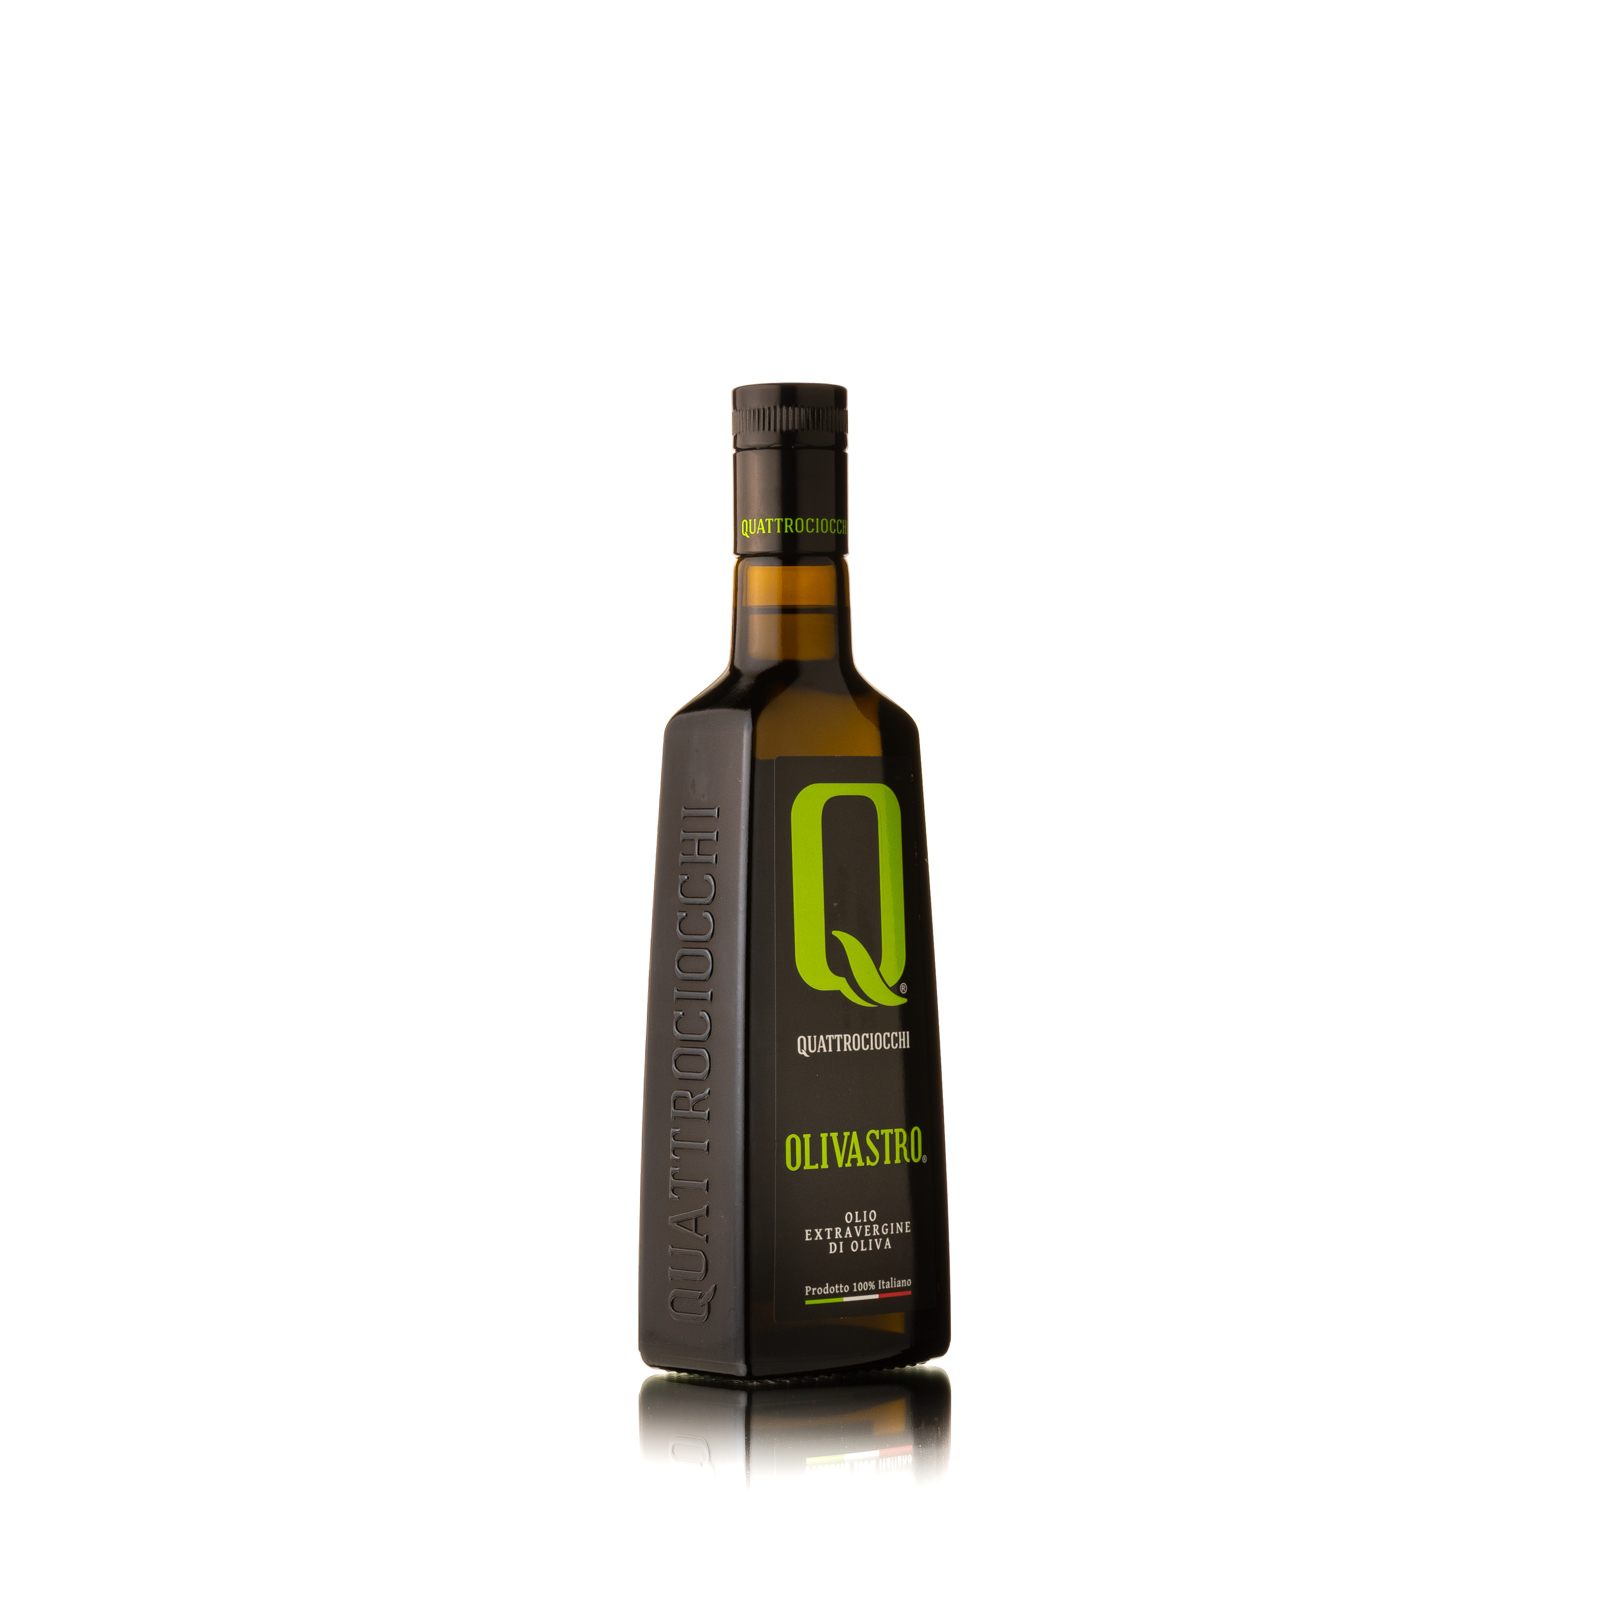 OLIO EXTRAVERGINE DI OLIVA “Olivastro” ML 500